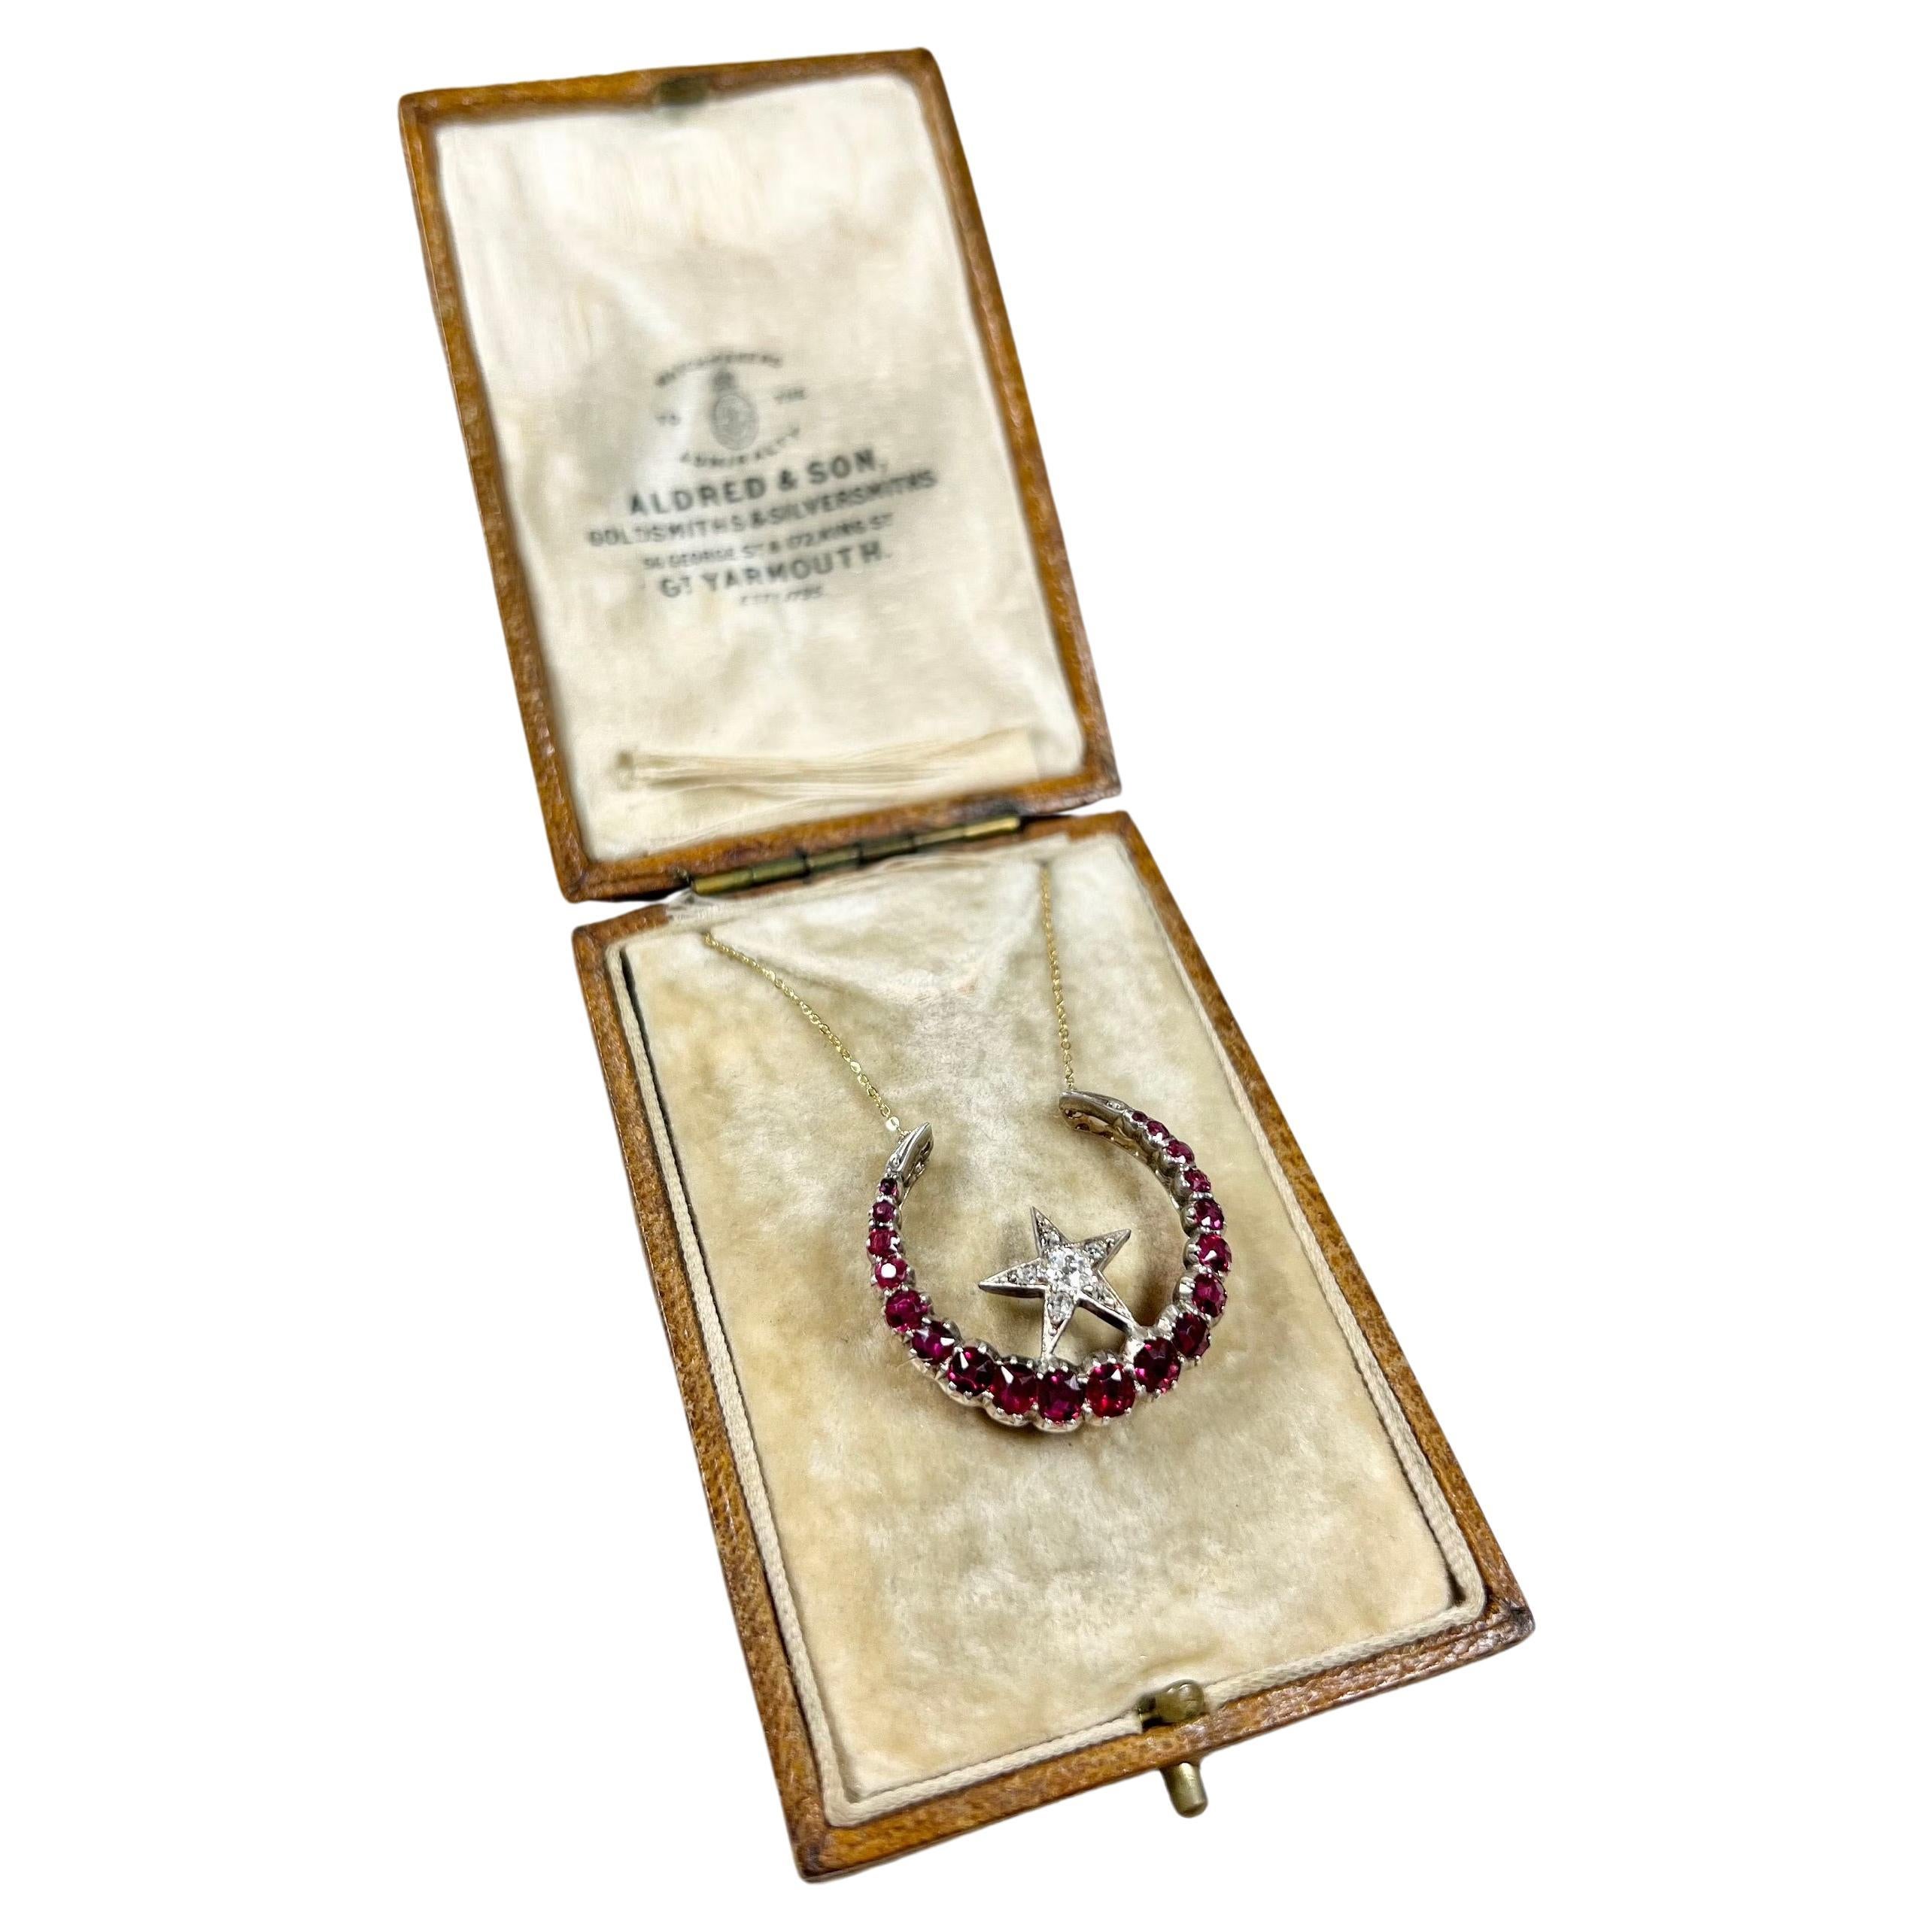 Collier en or 18ct, pendentif étoile de lune en forme de croissant, rubis naturel et diamant, de style victorien